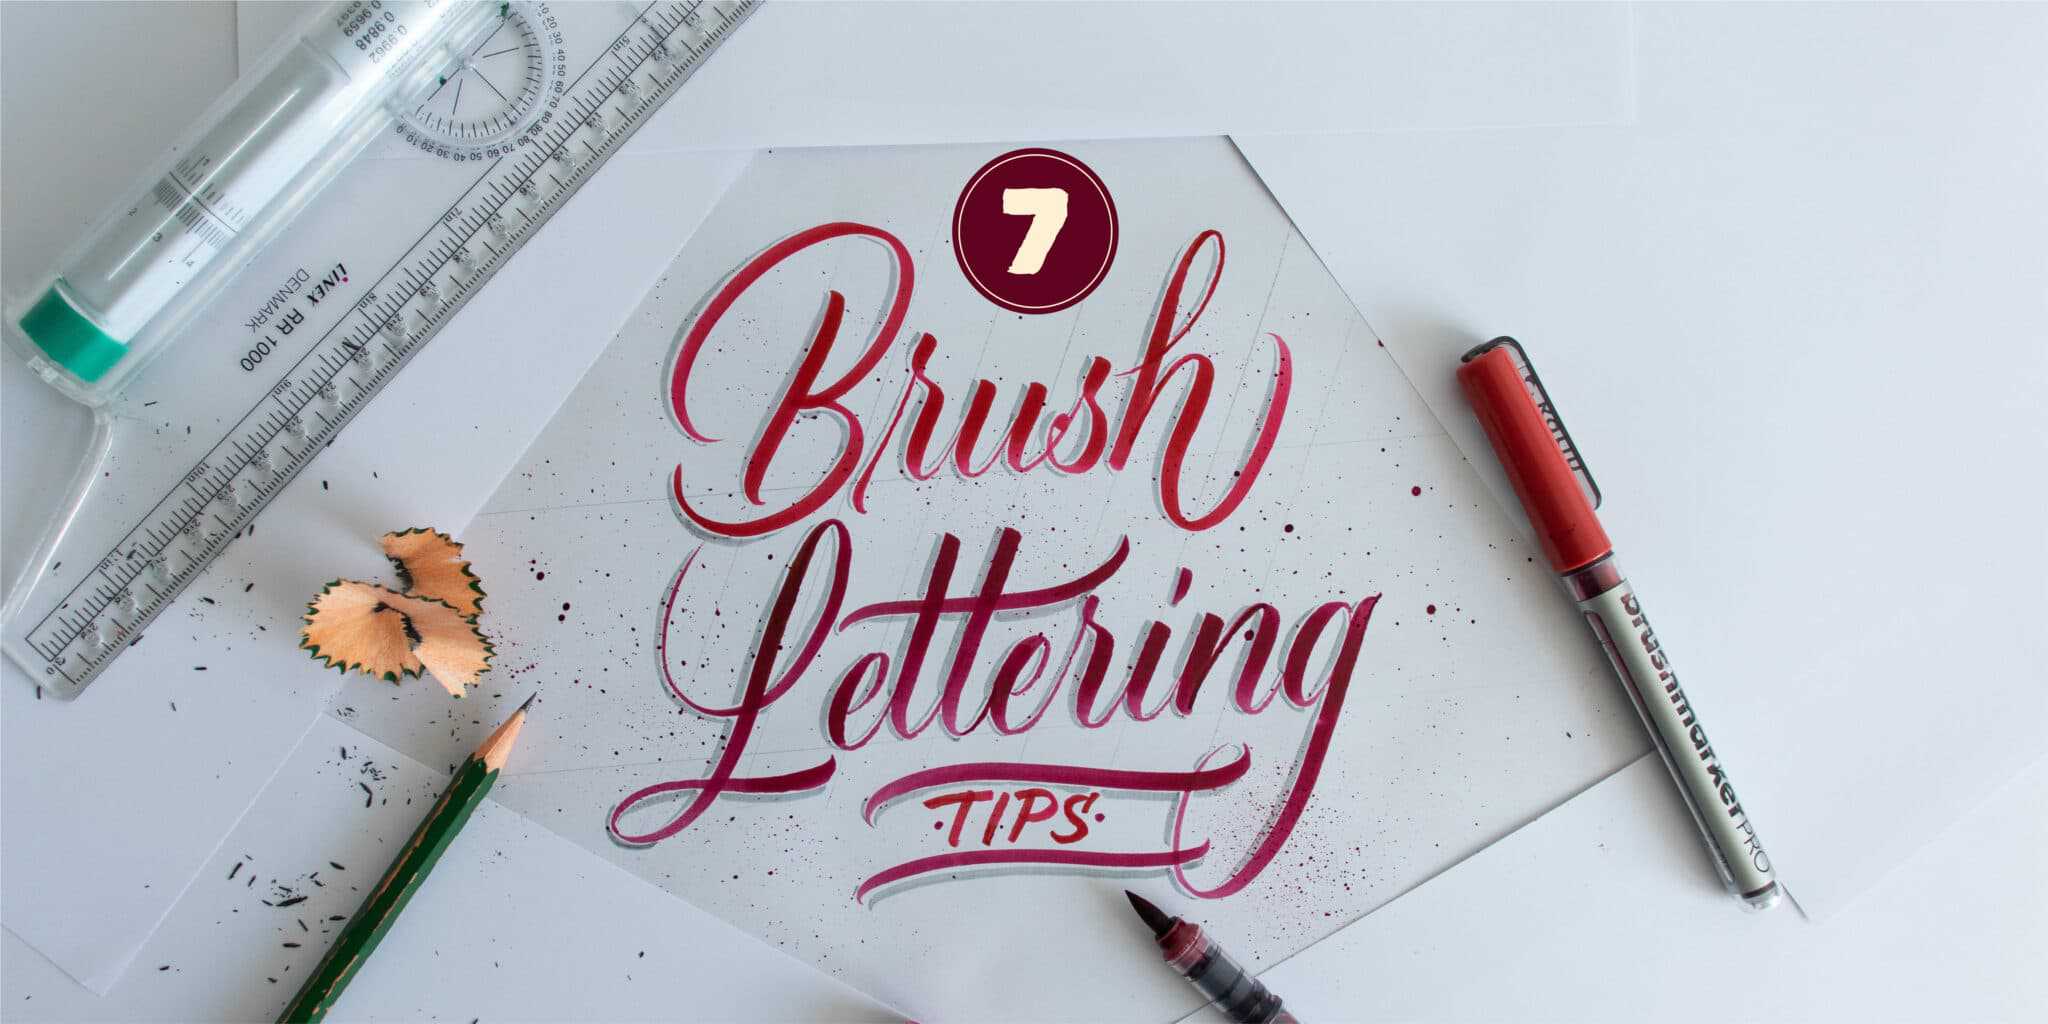 Brush Calligraphy Tips for Beginners